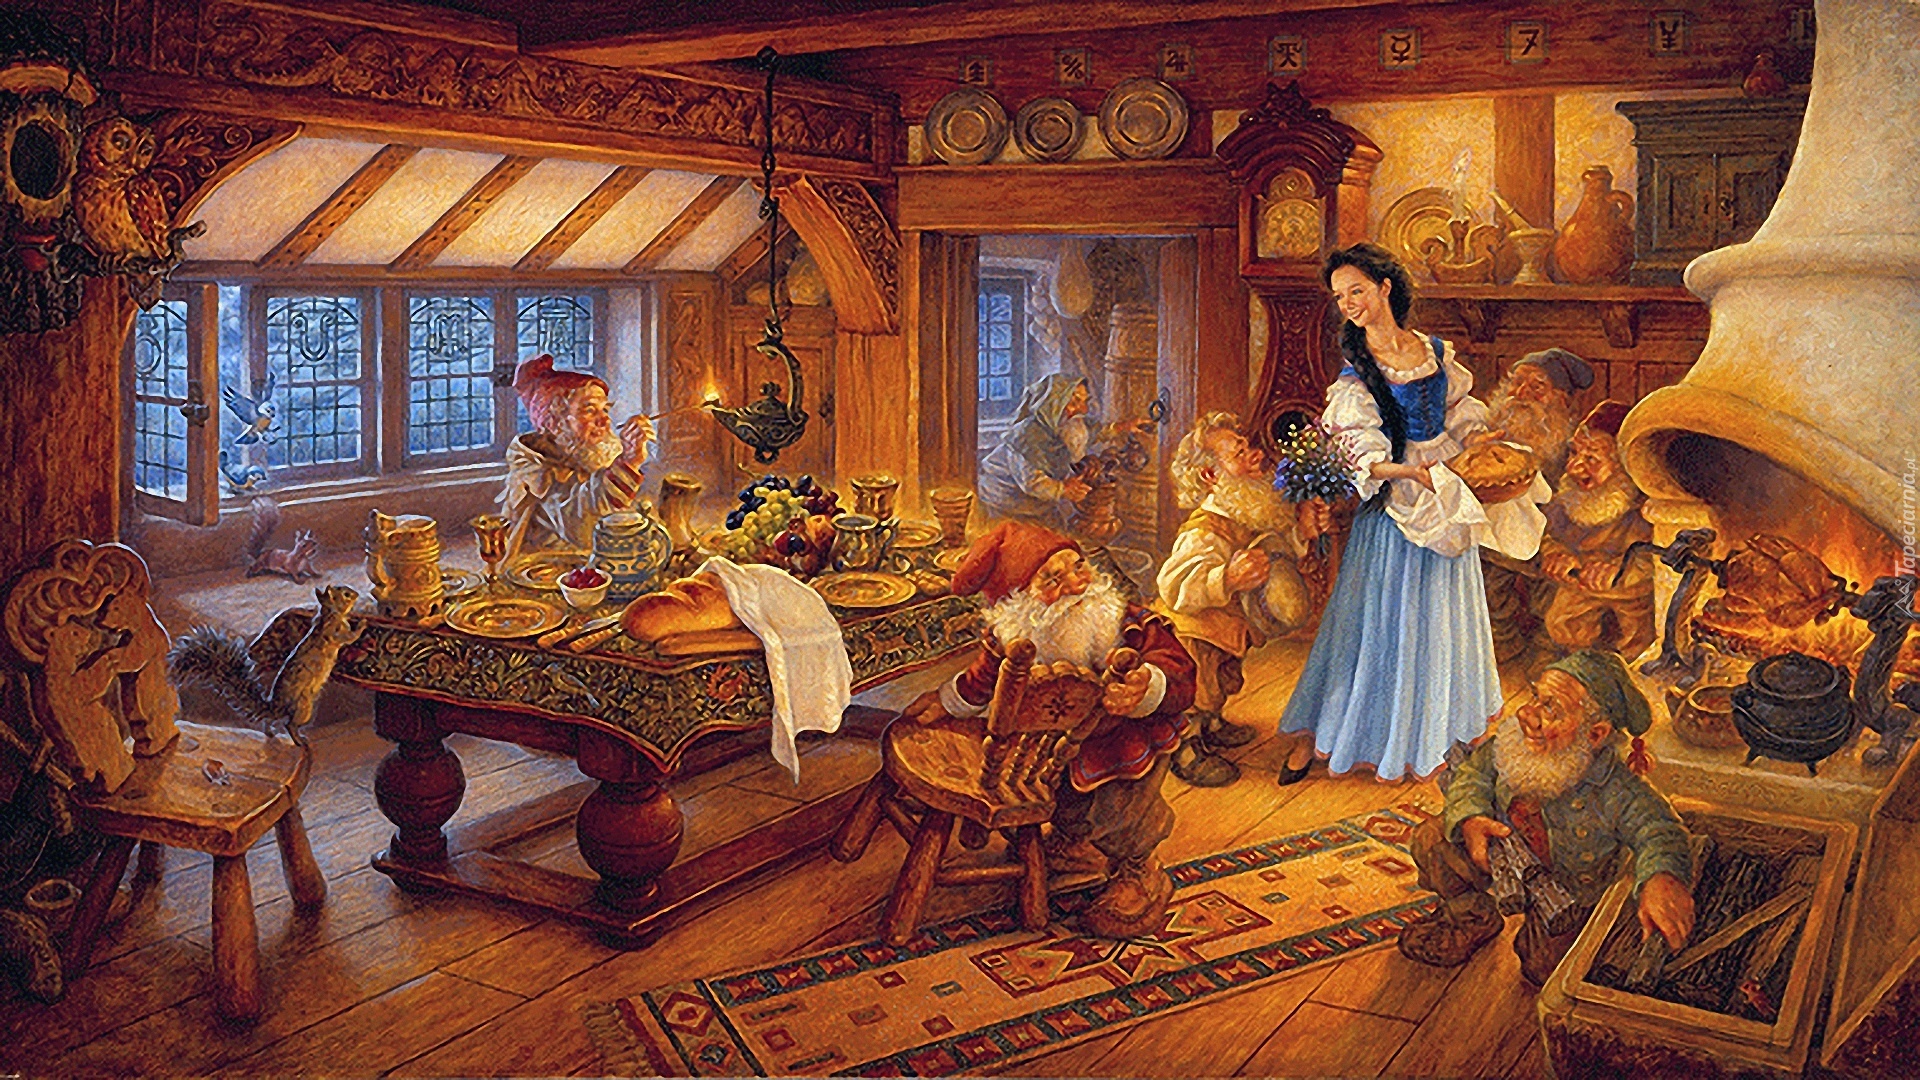 Scott Gustafson, Malarstwo, Królewna Śnieżka i siedmiu krasnoludków, Snow White and the Seven Dwarfs